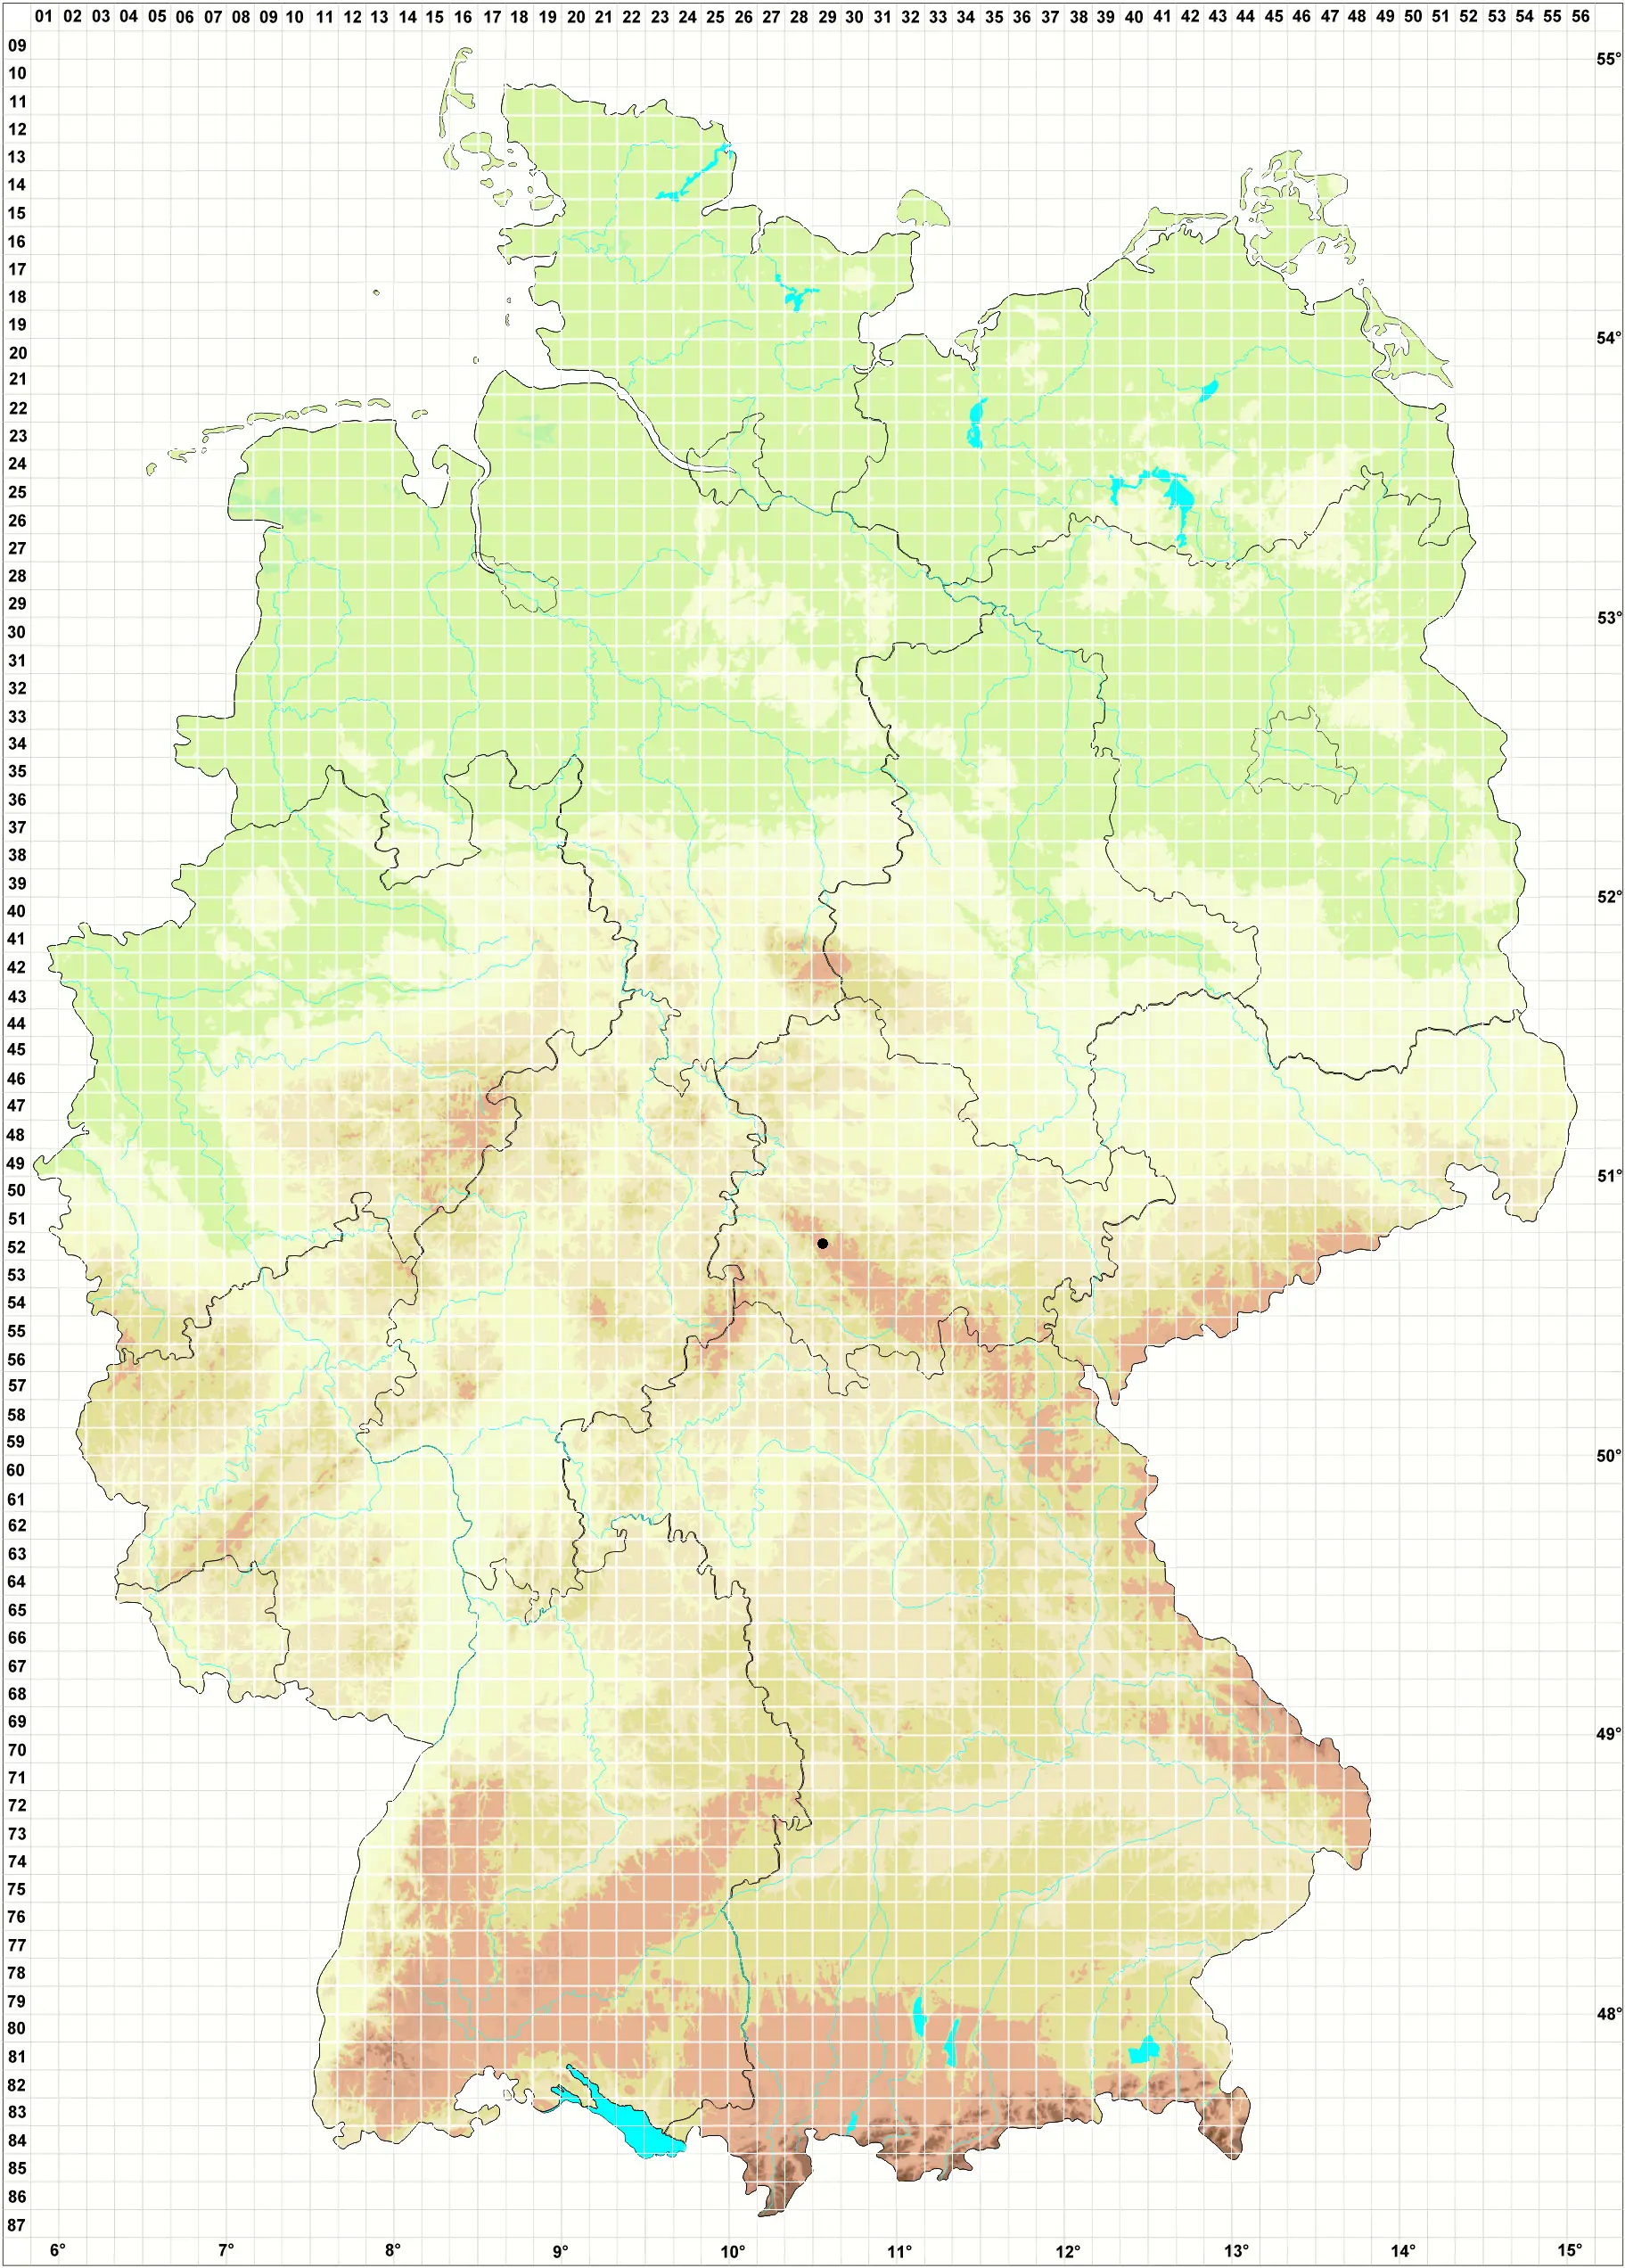 Karte H. Grünberg 31.08.2013